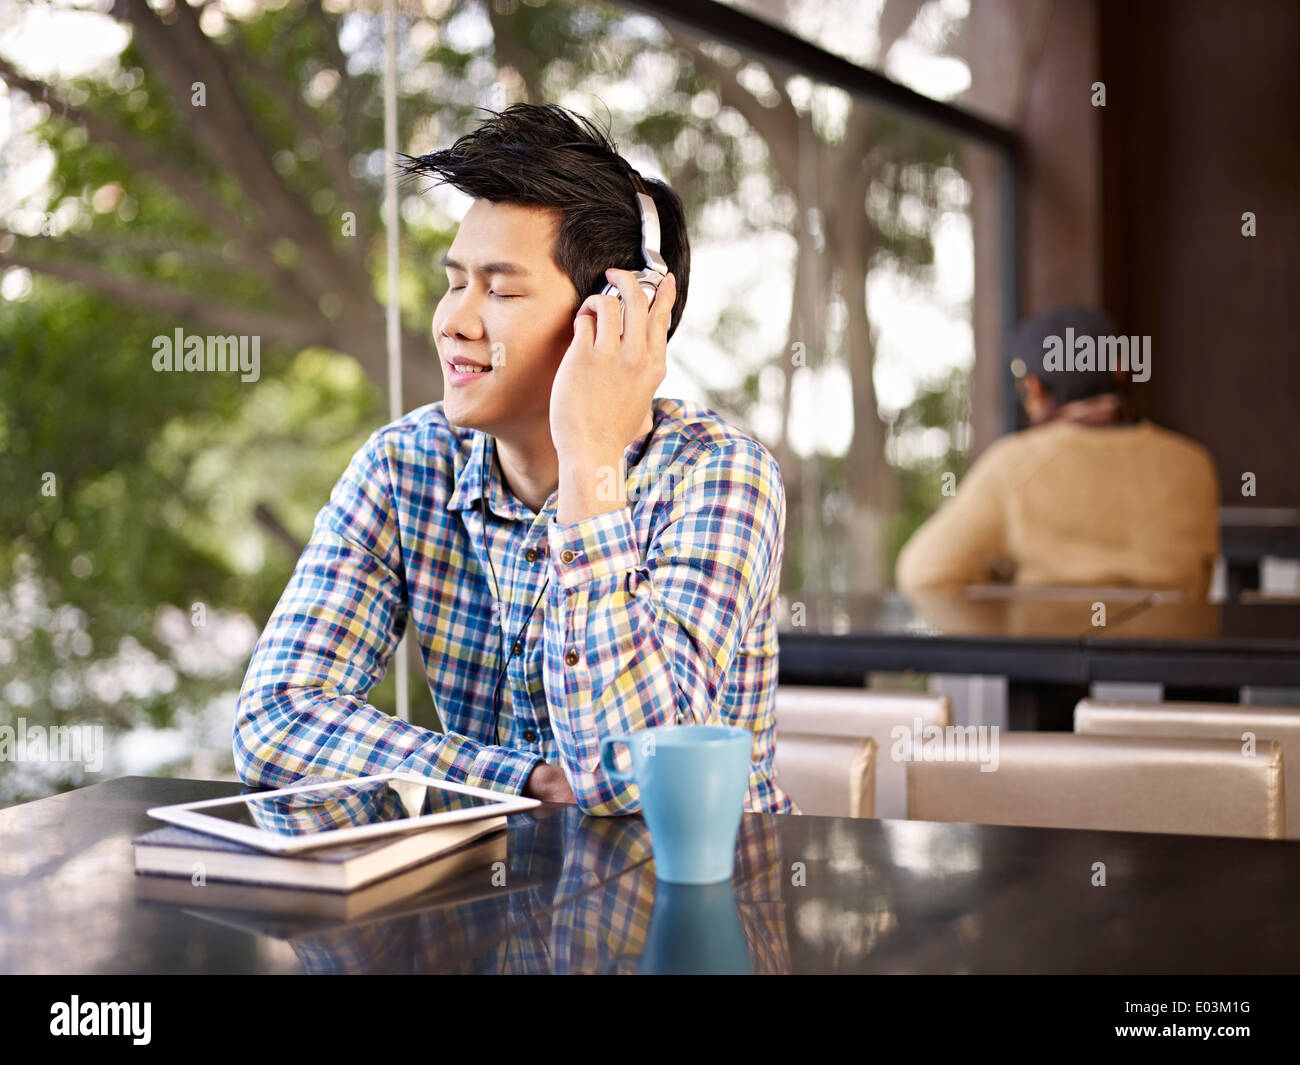 young man enjoying music in coffee shop Stock Photo